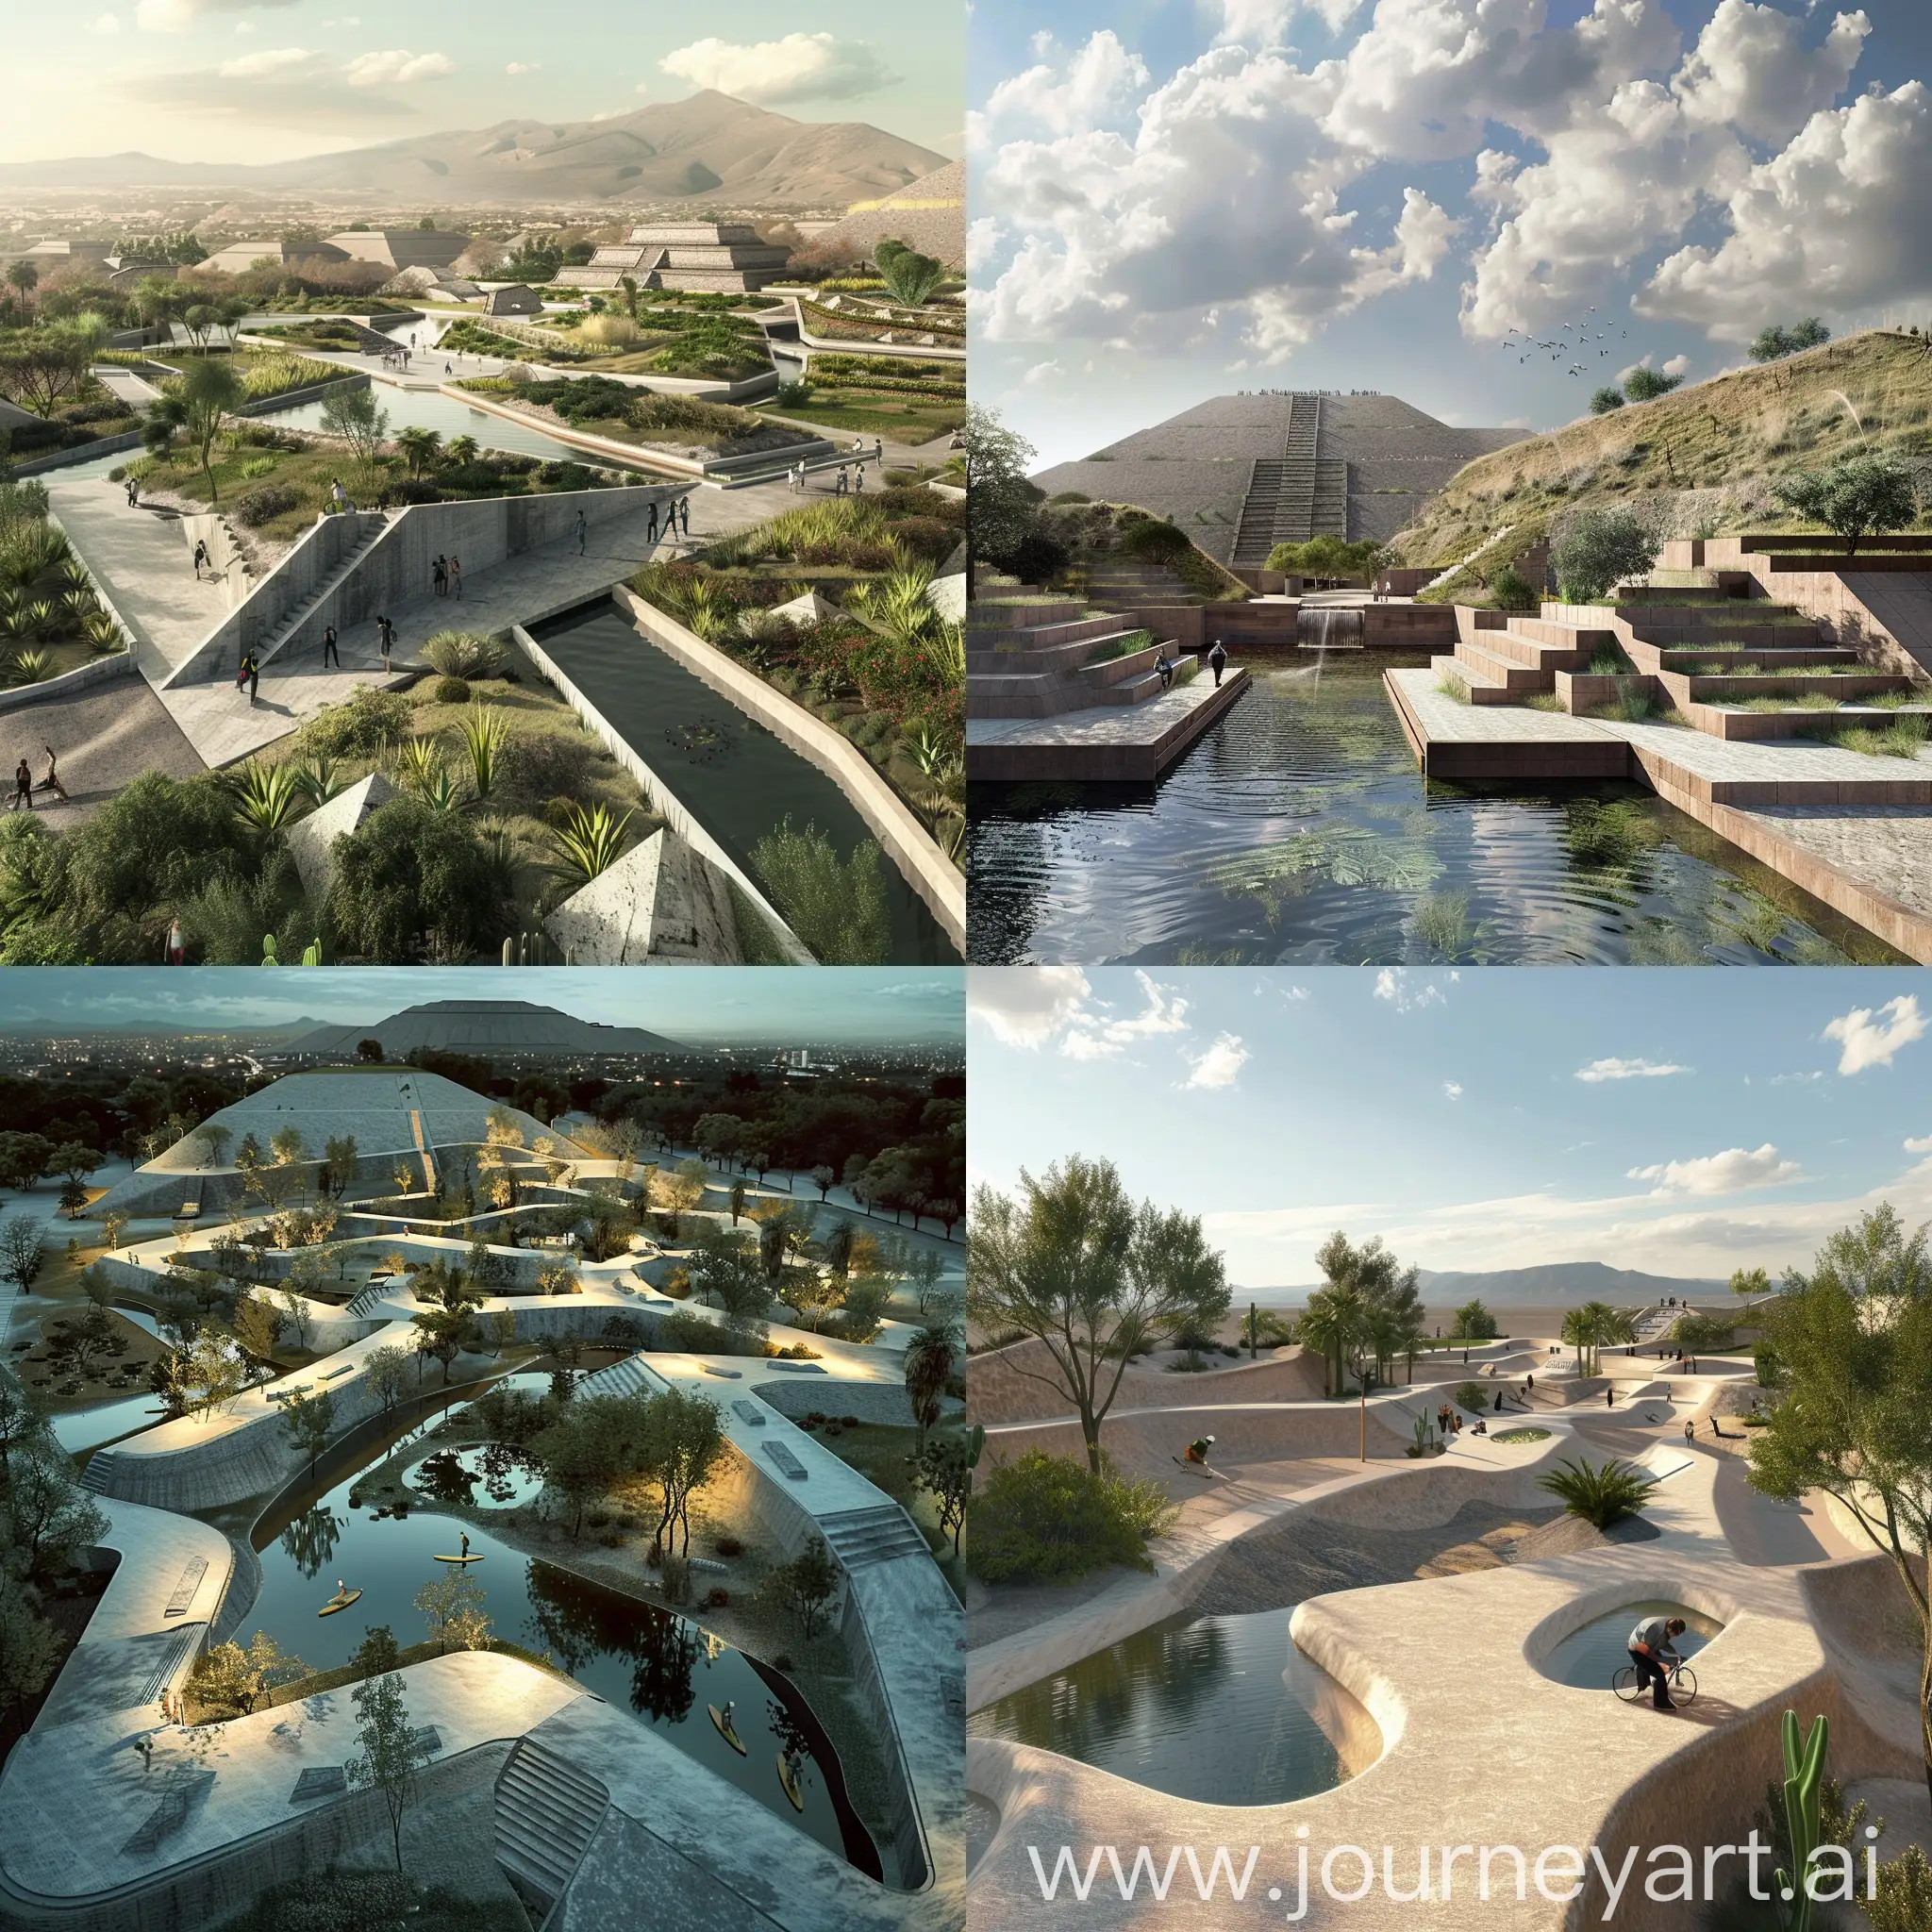 diseña un espacio parque inspirado en la geometría y arquitectura prehispánica de teotihuacan, respetando sus formas, agua, juegos de alturas y monumentalidad, con taludes